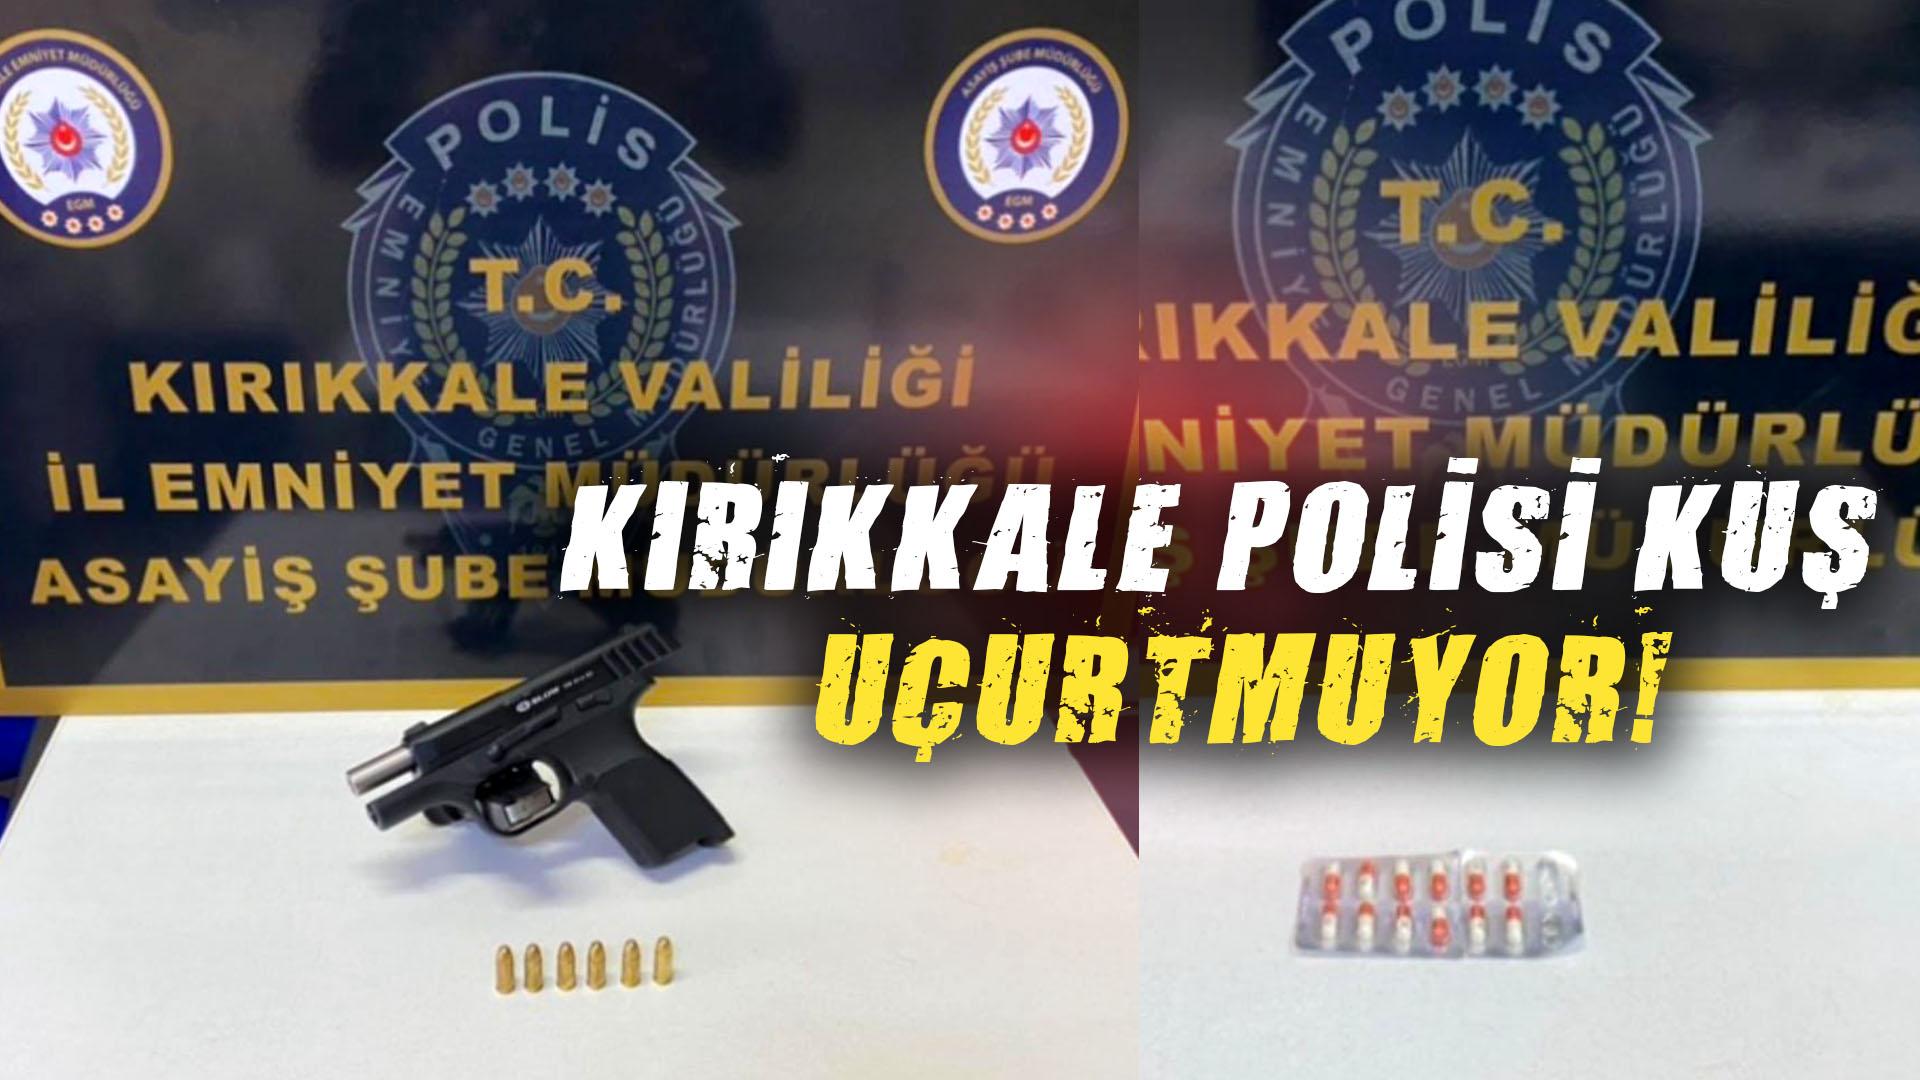 KIRIKKALE POLİSİ KUŞ UÇURTMUYOR!